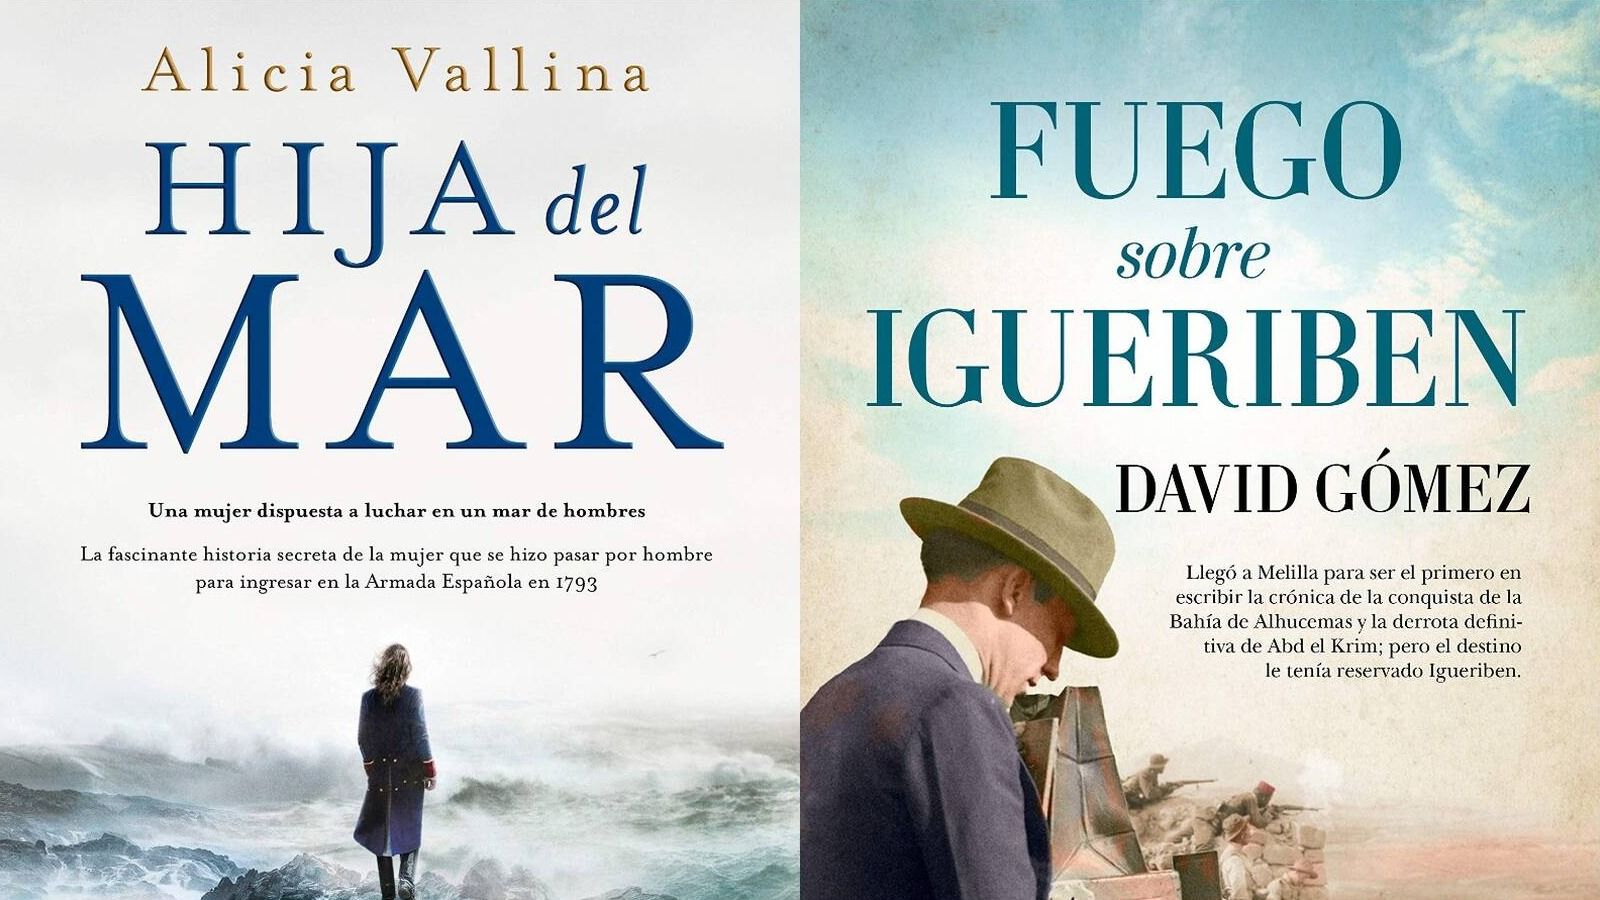 Alicia Vallina y David Gómez ganan el III Premio de Novela Histórica de Pozuelo